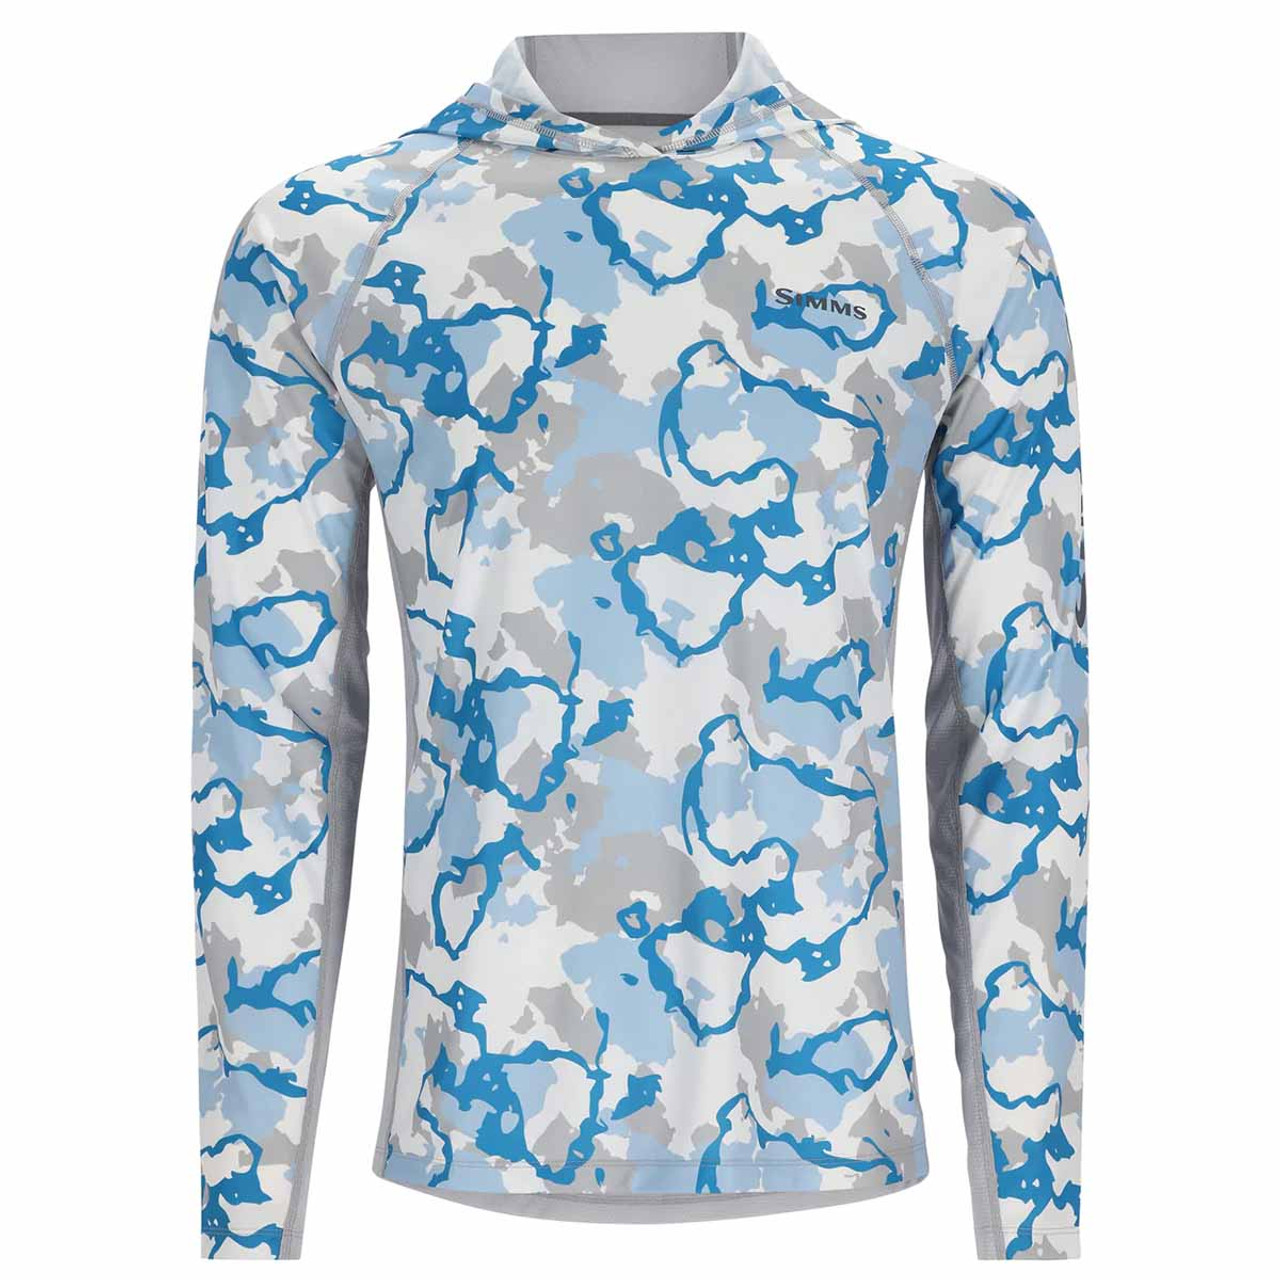 Simms Men's Challenger Short Sleeve Shirt Steel Blue / Large